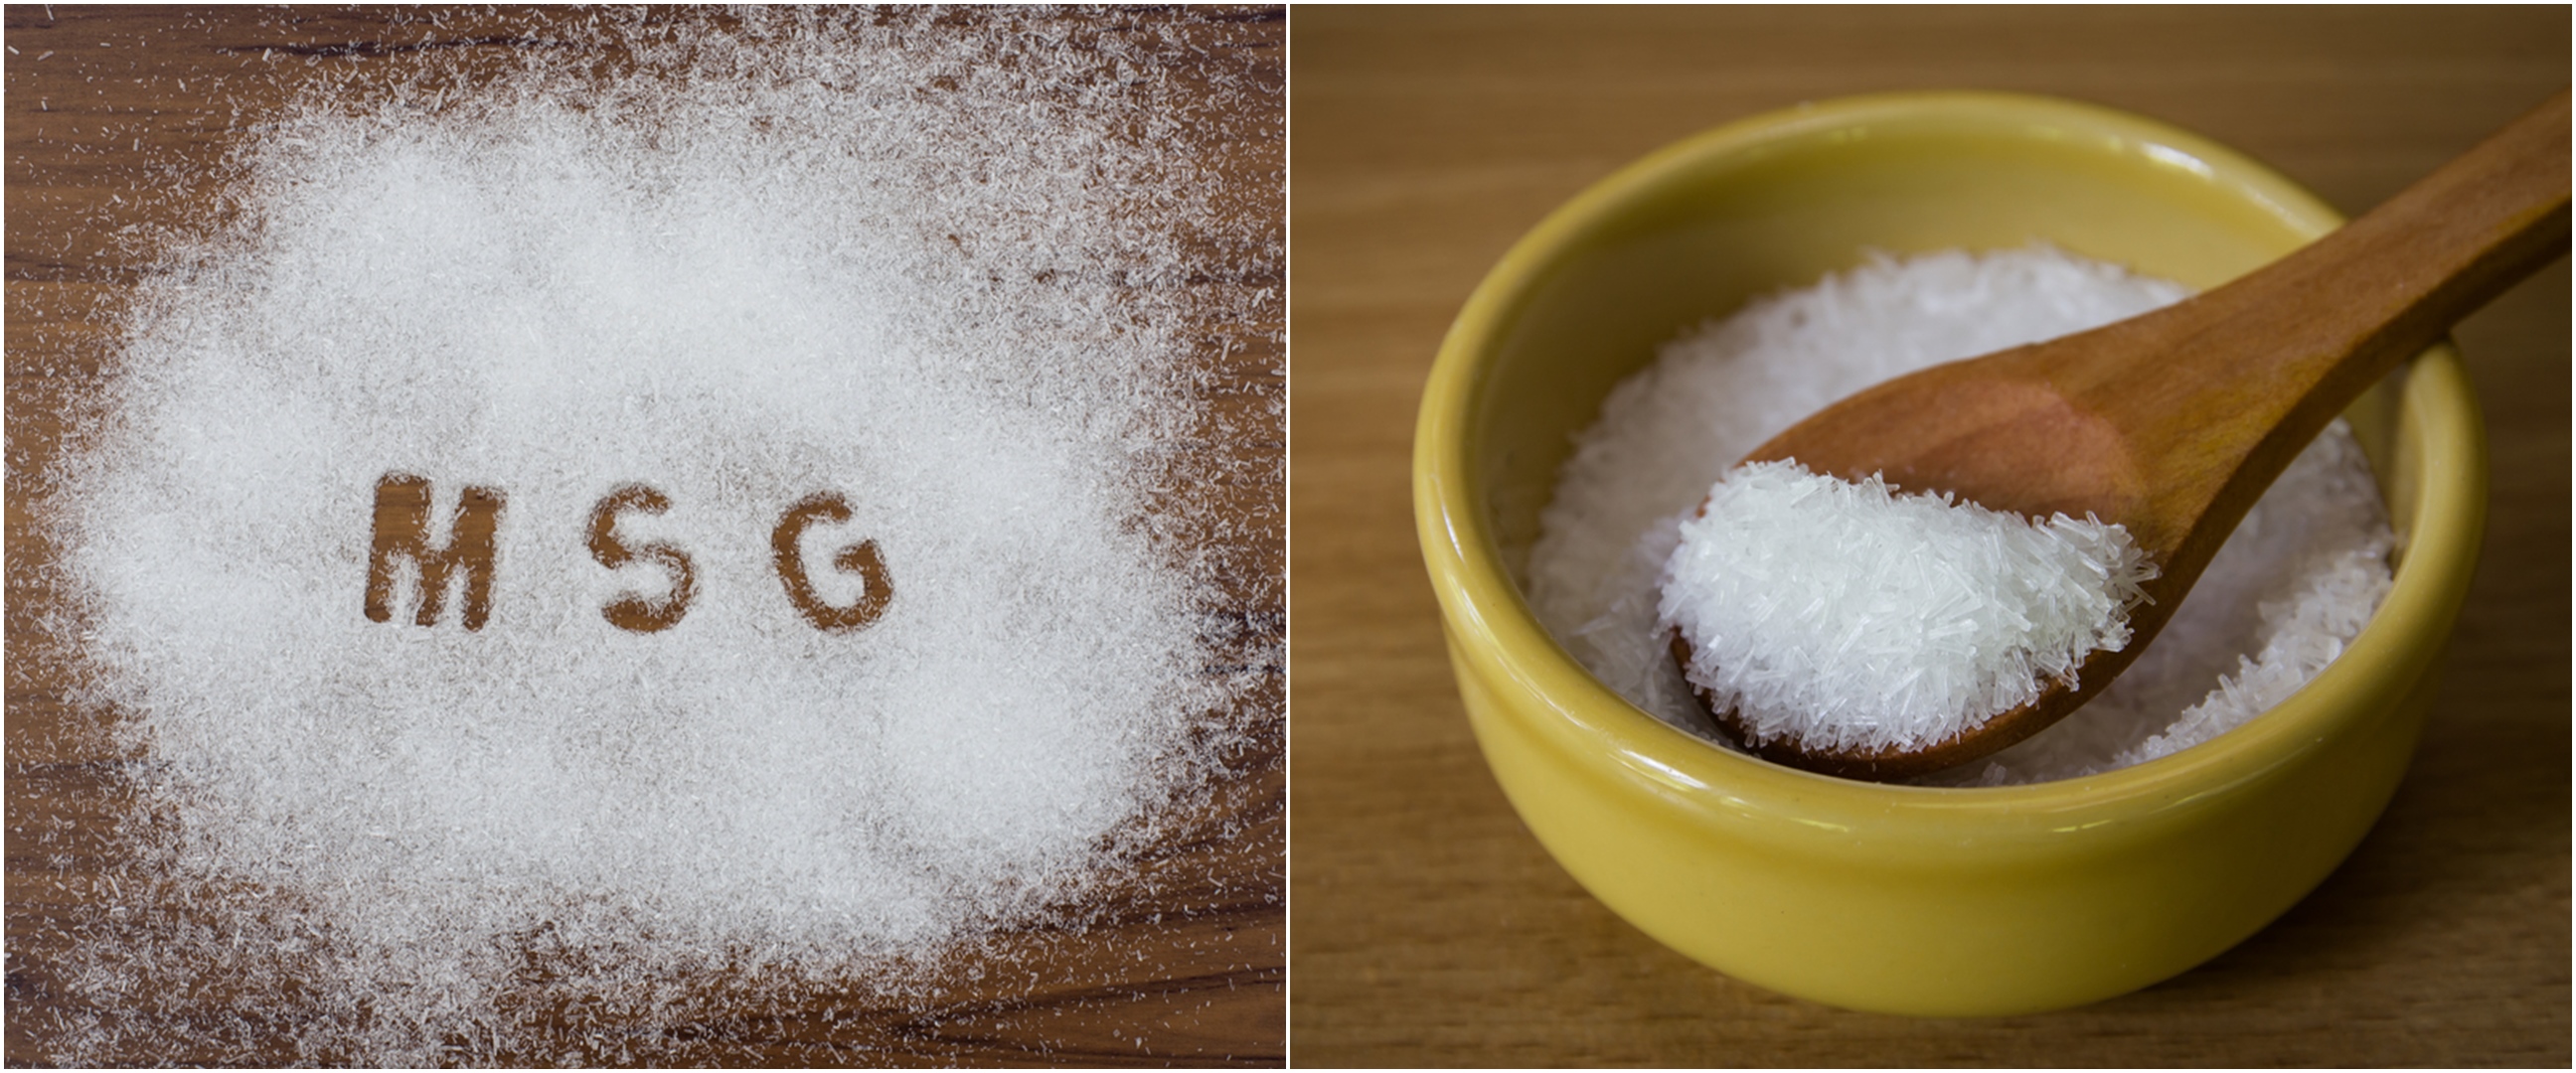 Konsumsi sodium meningkat sebabkan masalah kesehatan, apa alternatifnya untuk garam di rumah?